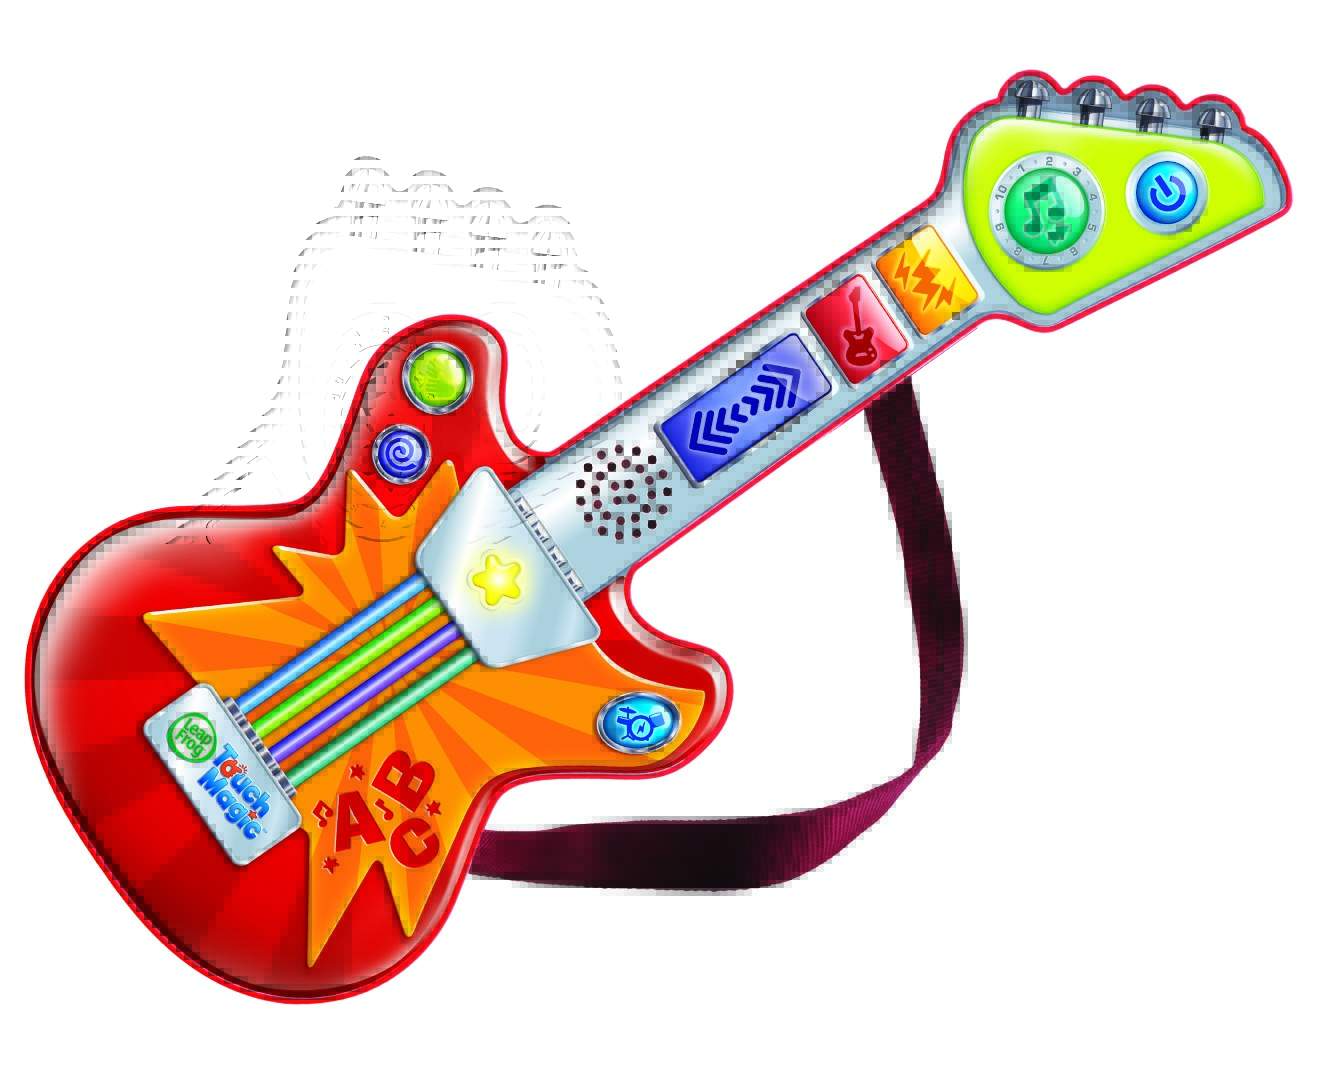 Детские музыкальные гитары